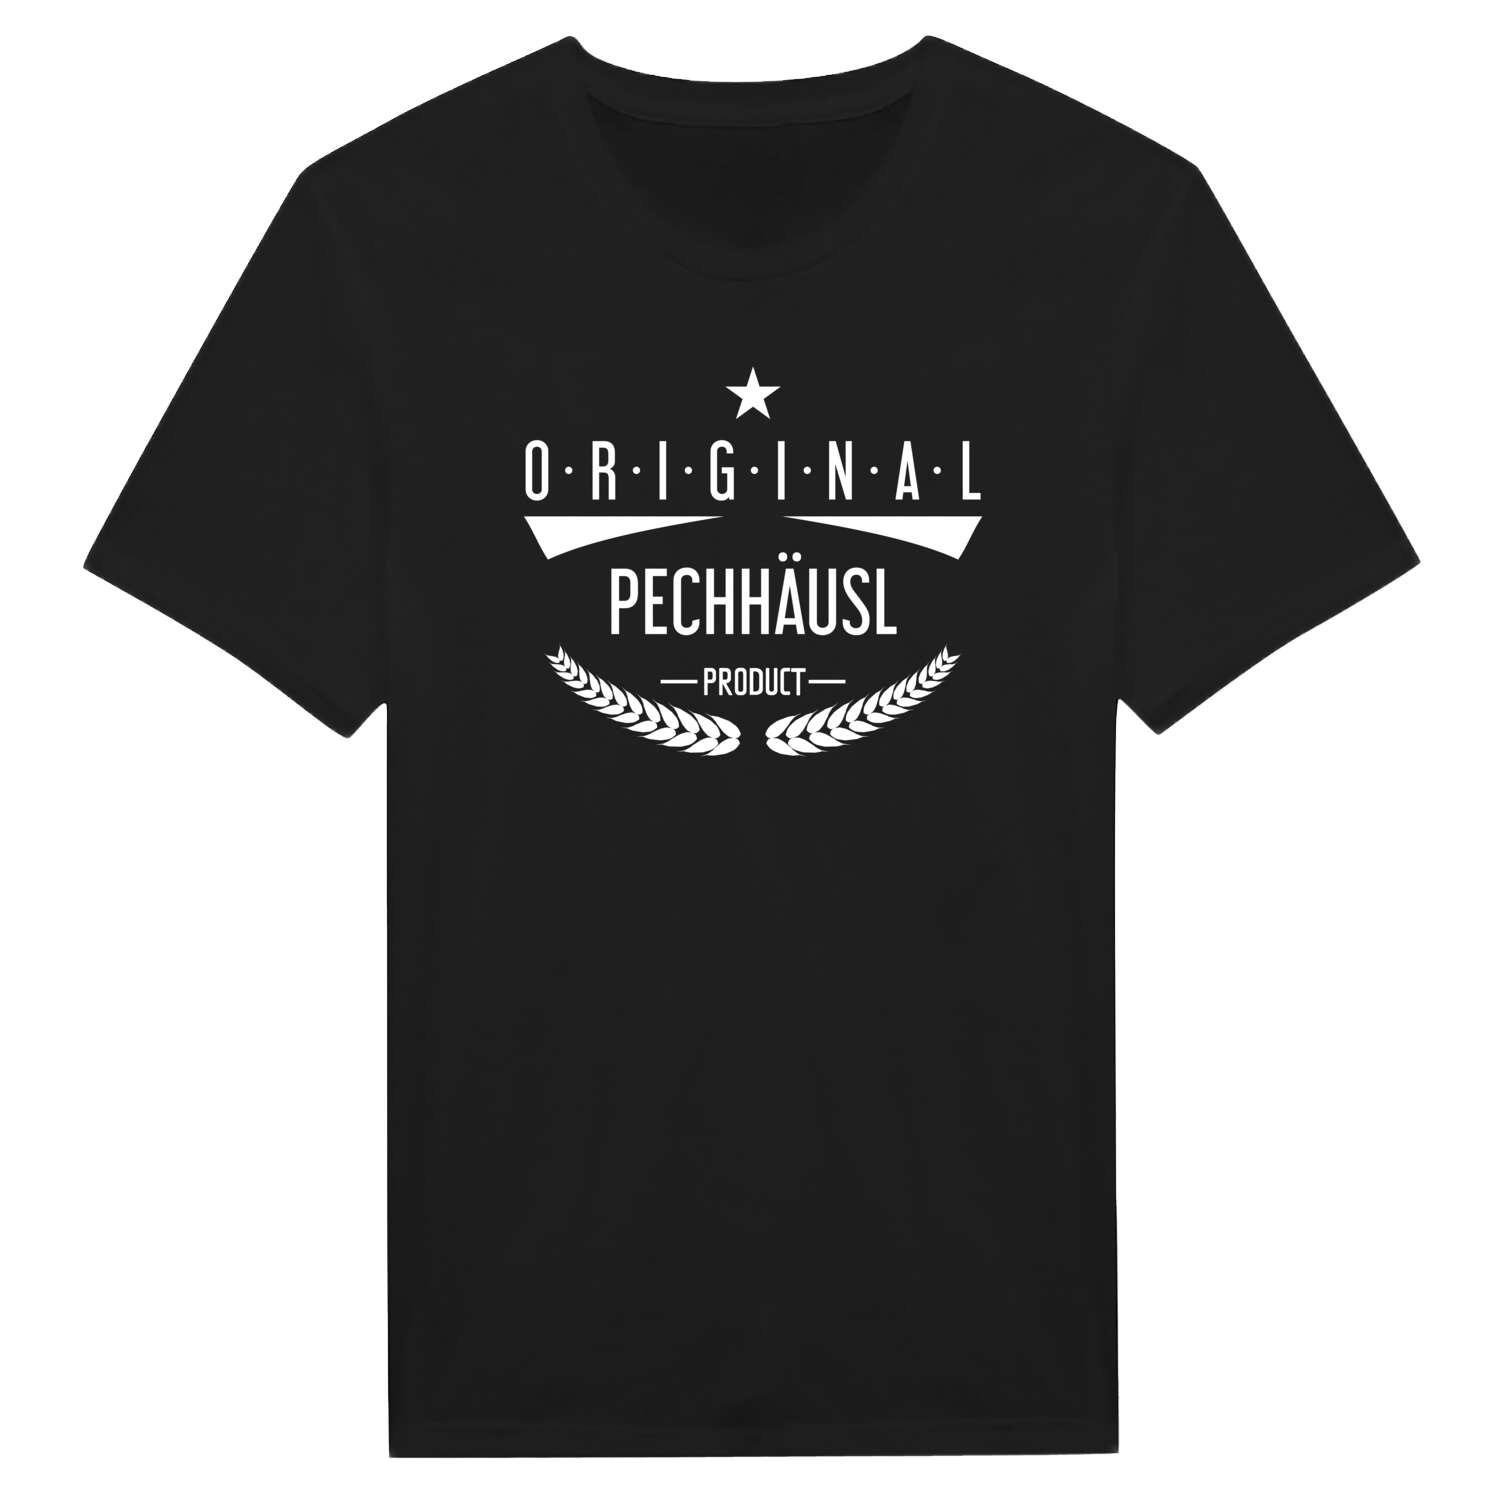 Pechhäusl T-Shirt »Original Product«